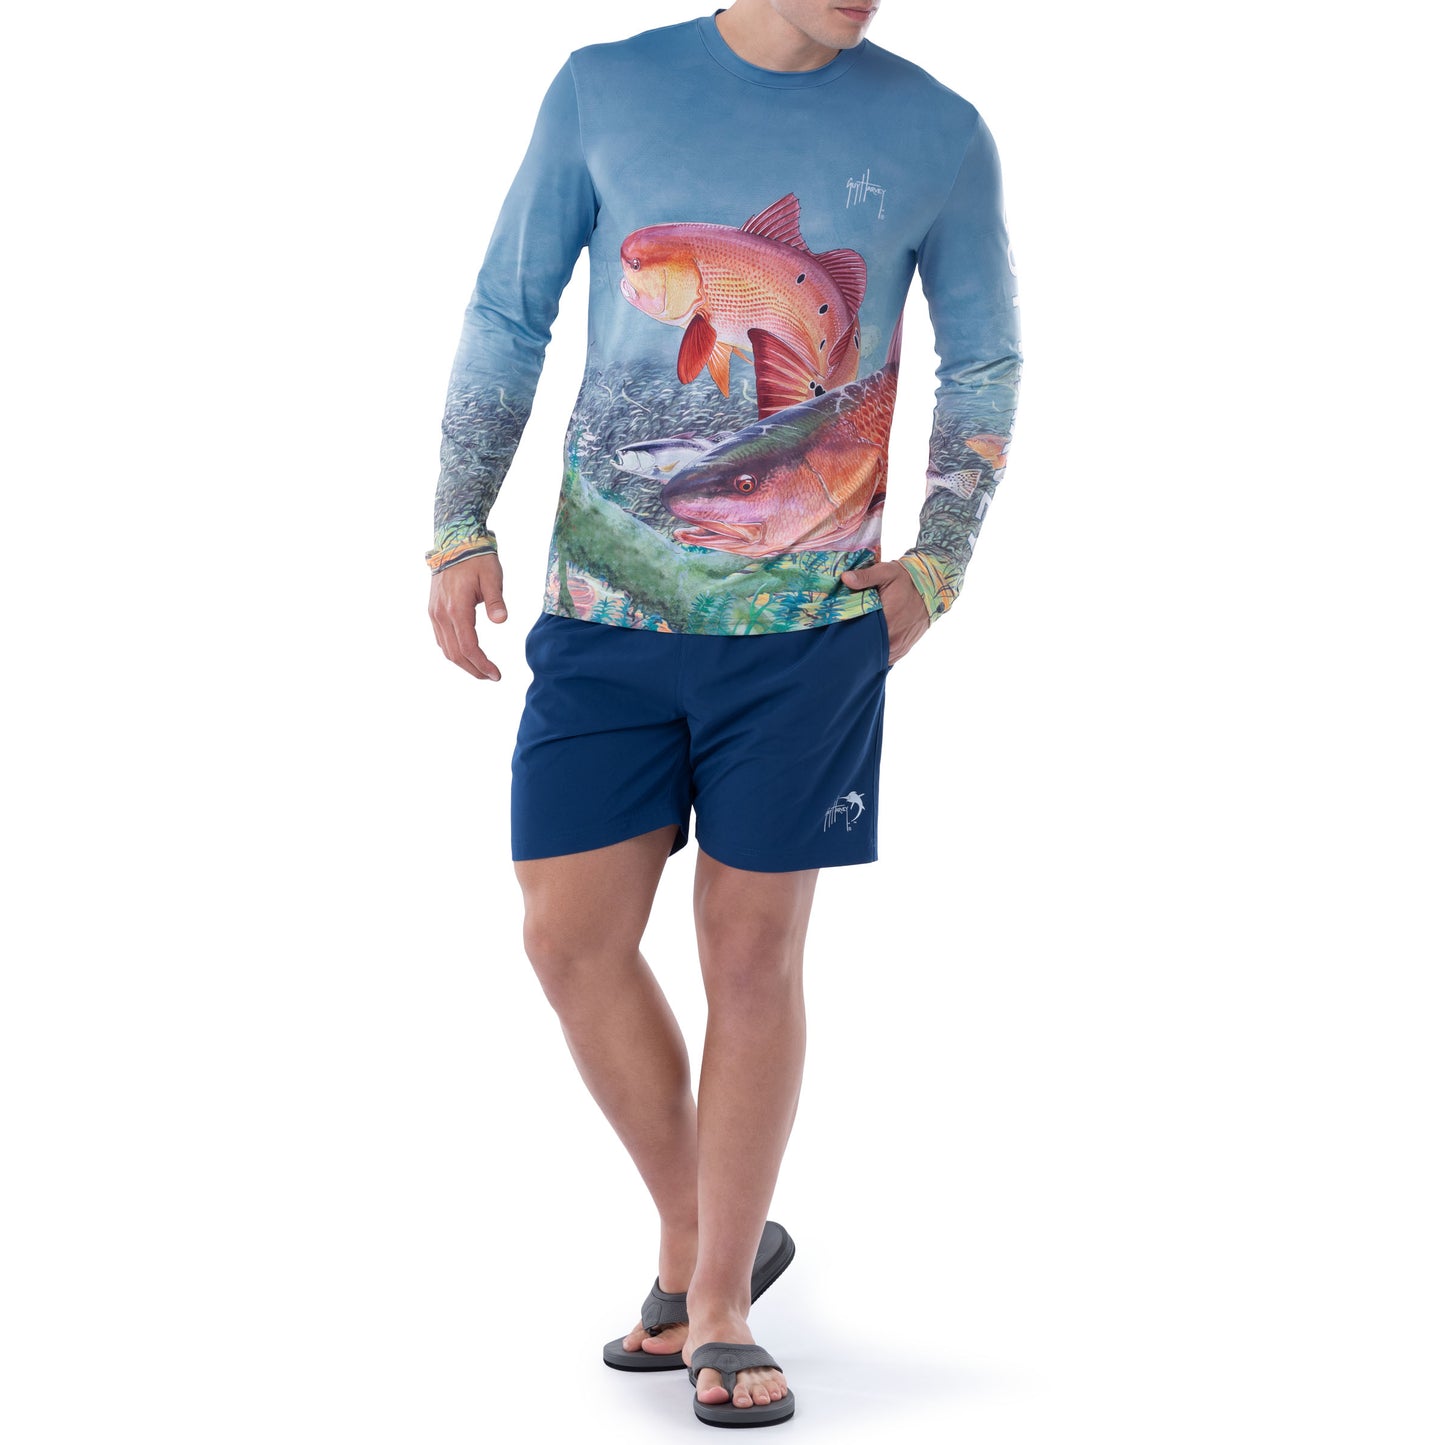 Fishing Performance Short Sleeve Shirt, men's UV 44+ sun